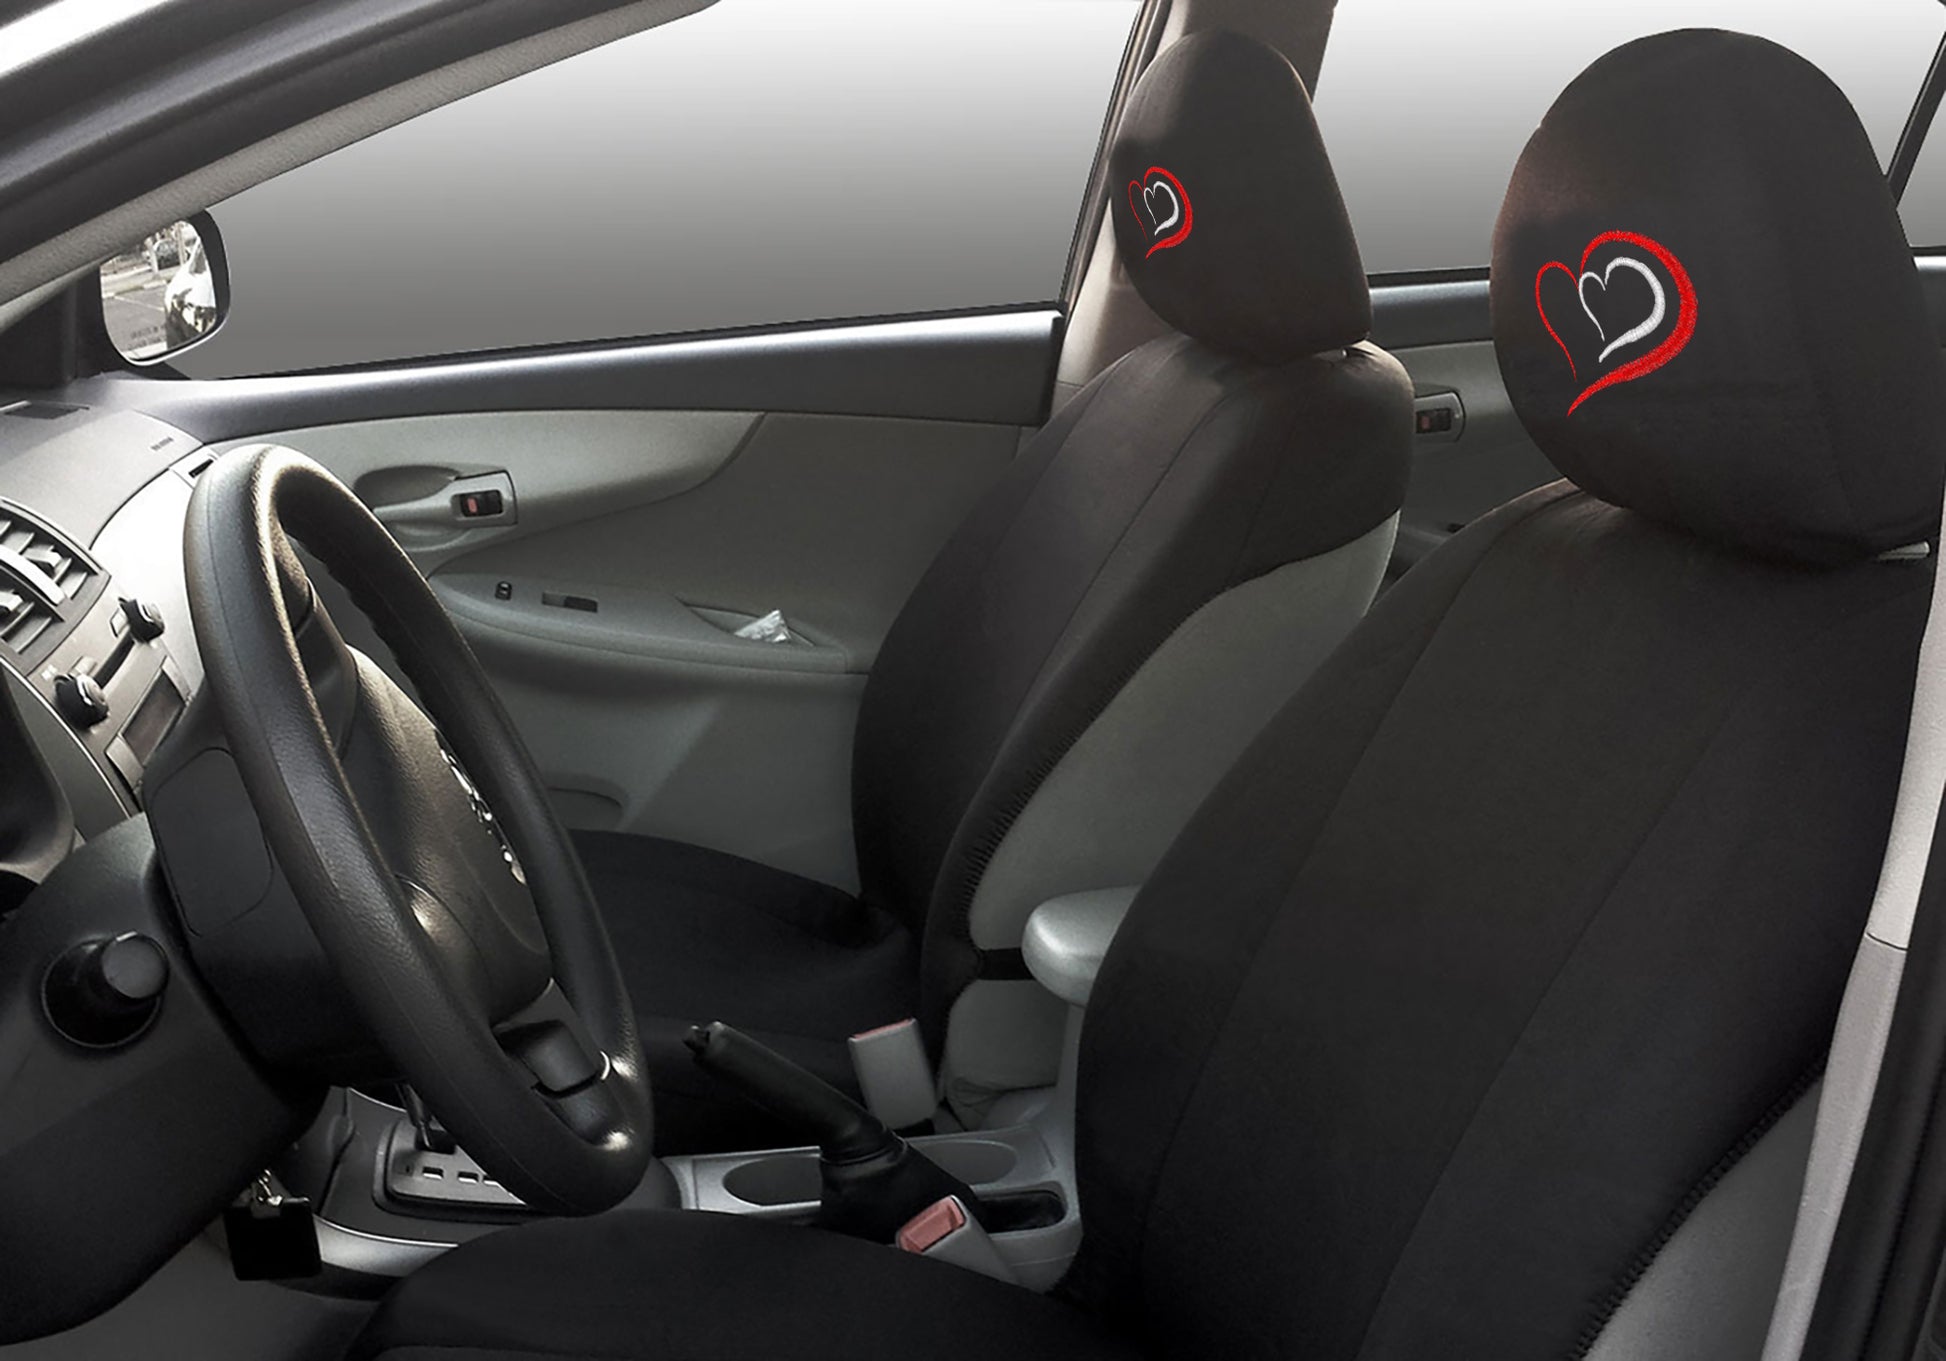 Red Heart Design Auto Truck SUV Car Seat Headrest Cover Accessory 1 Piece - Yupbizauto